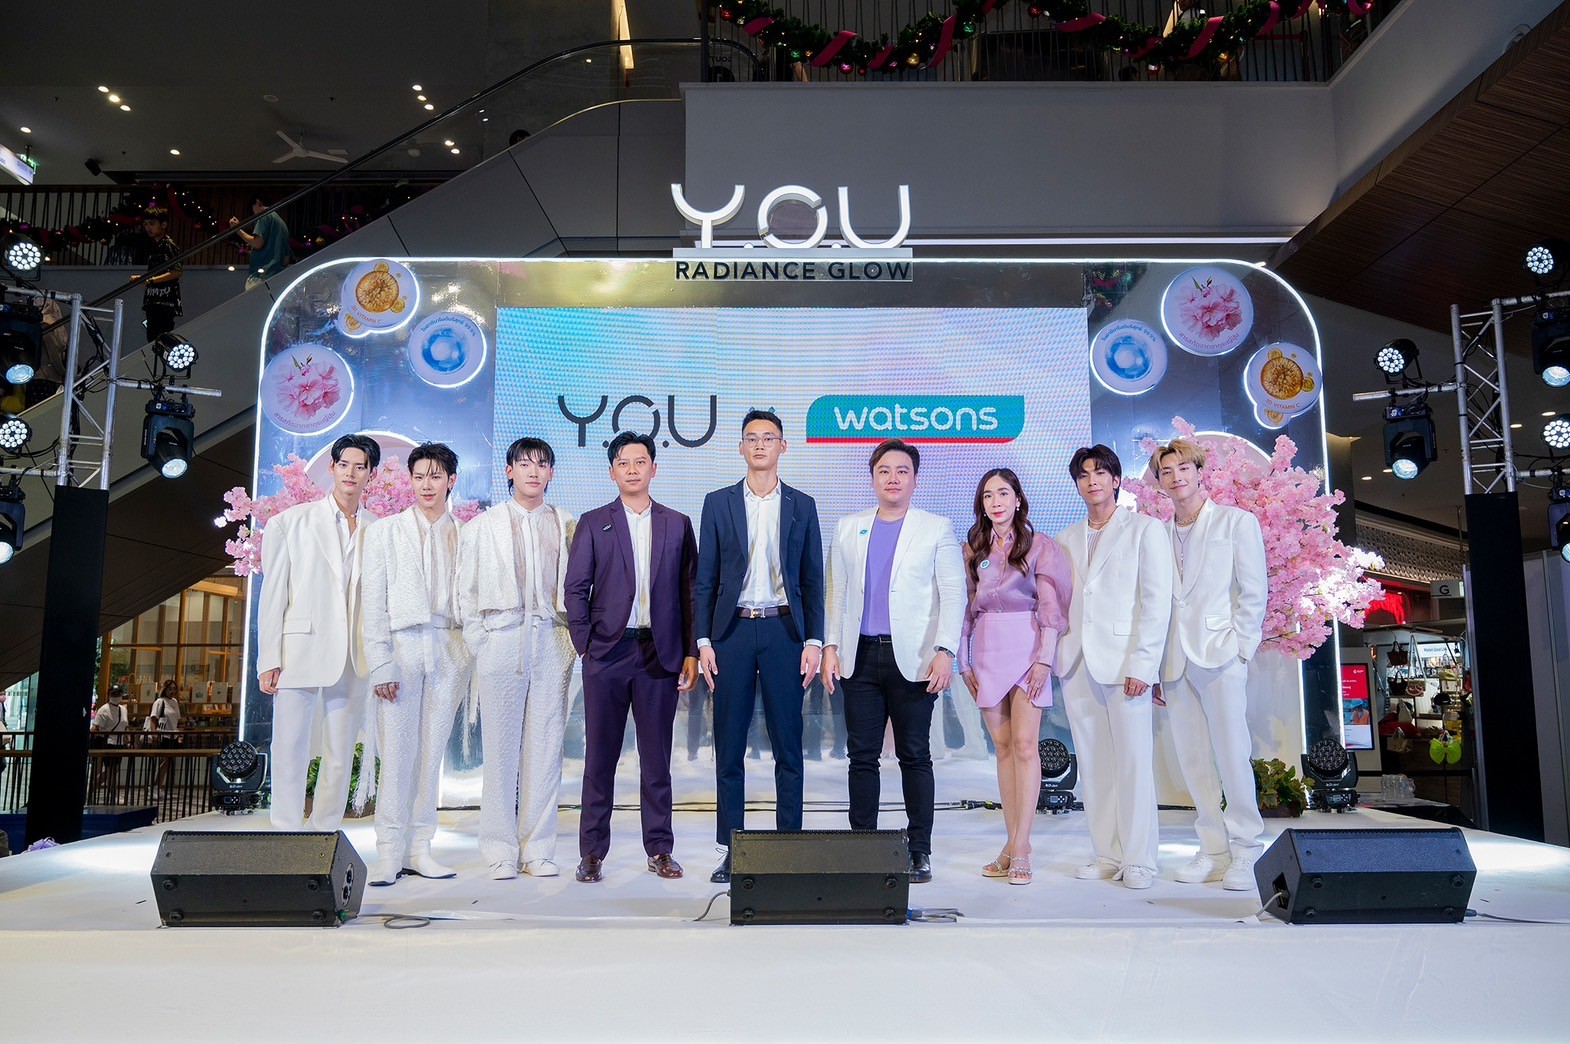 Y.O.U เปิดตัวผลิตภัณฑ์ใหม่ Radiance Glow Series บูสต์ผิวโกลว์ X7 ด้วยพลังแห่งซากุระ